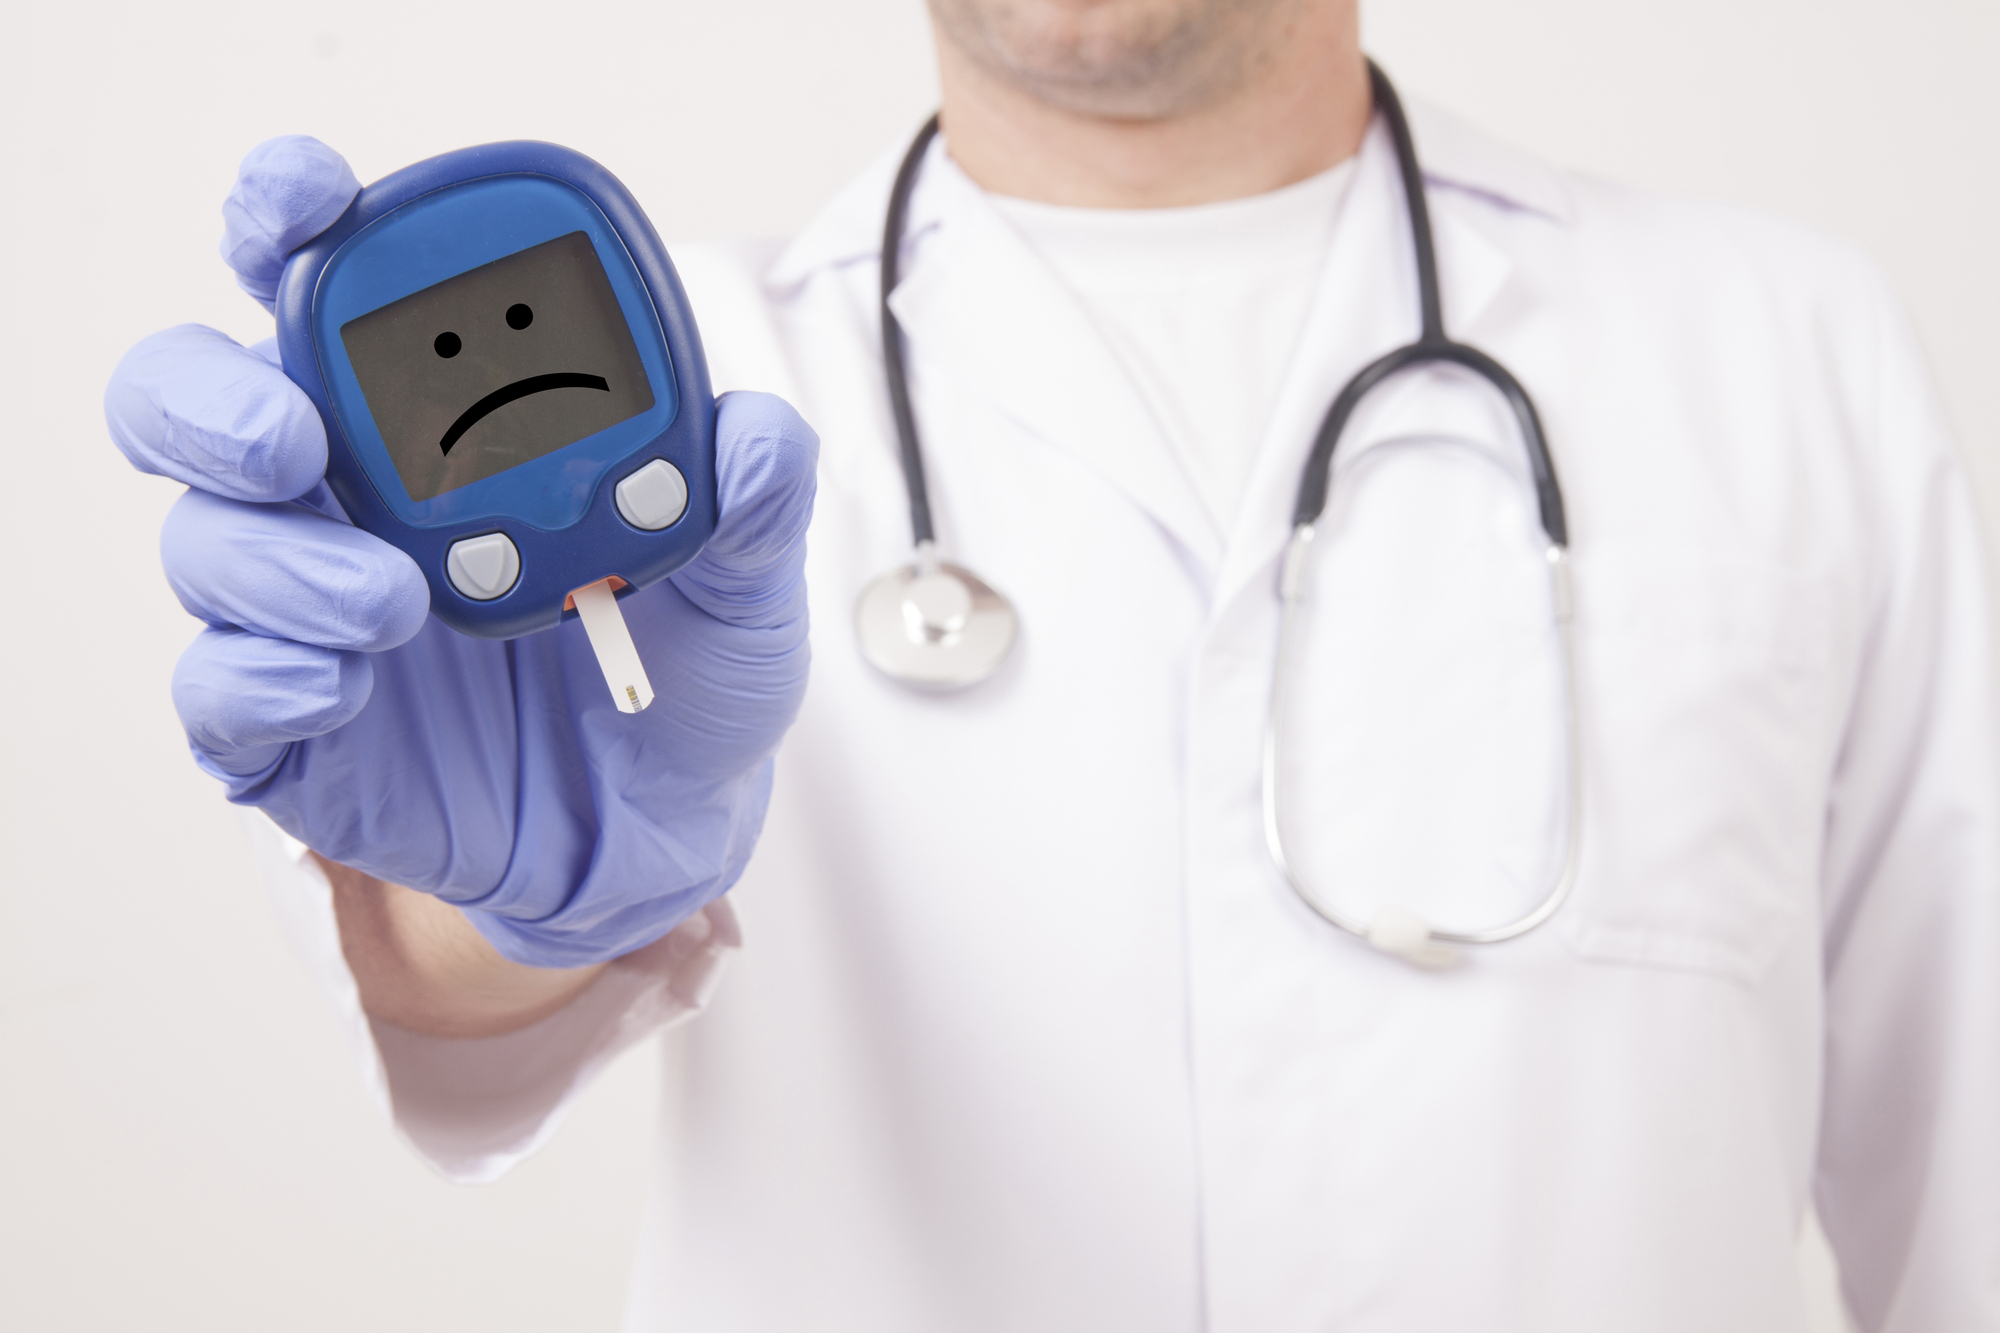 Doctor holding blood sugar meter displaying a sad face